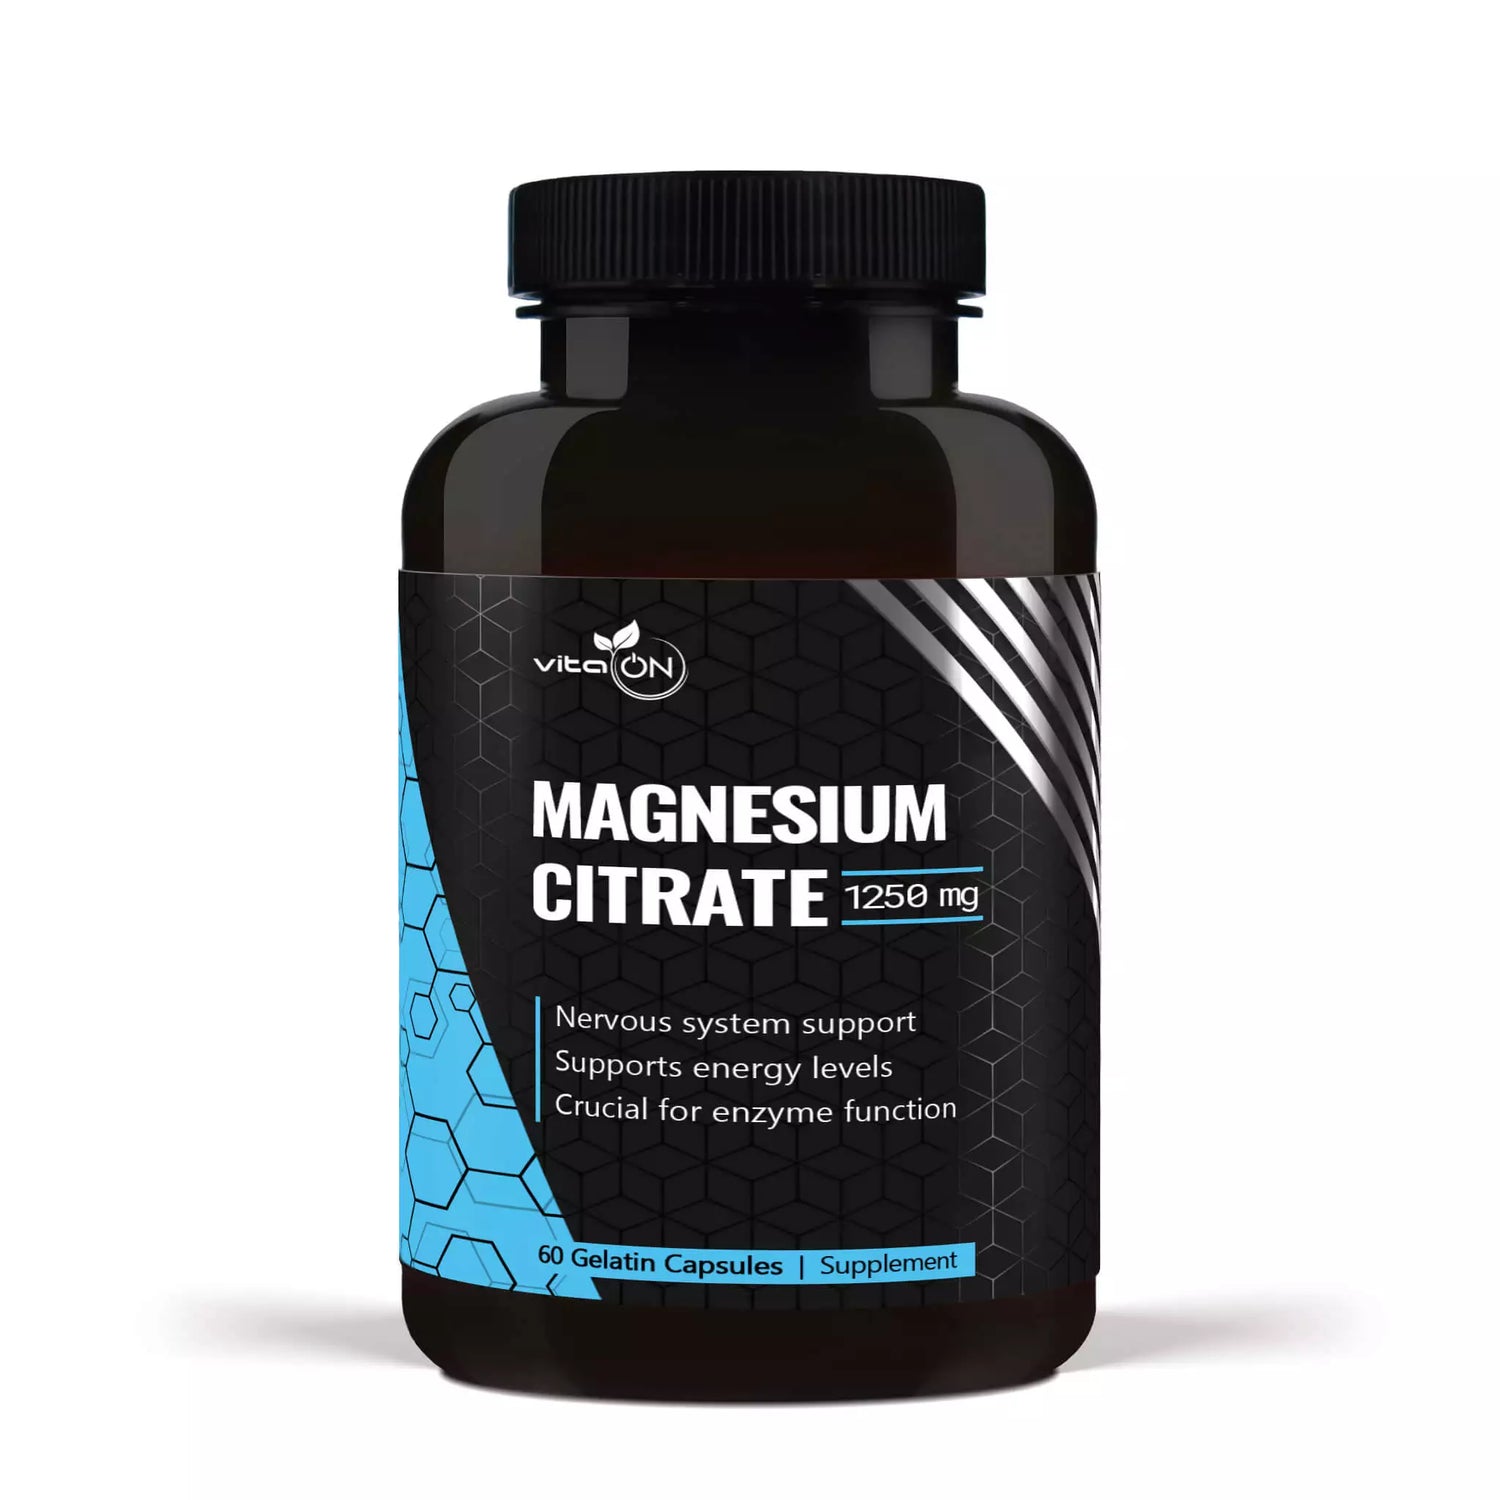 Wysokiej jakości źródło magnezu wspierające procesy enzymatyczne, funkcjonowanie mięśni, relaksację i ogólny stan zdrowia.